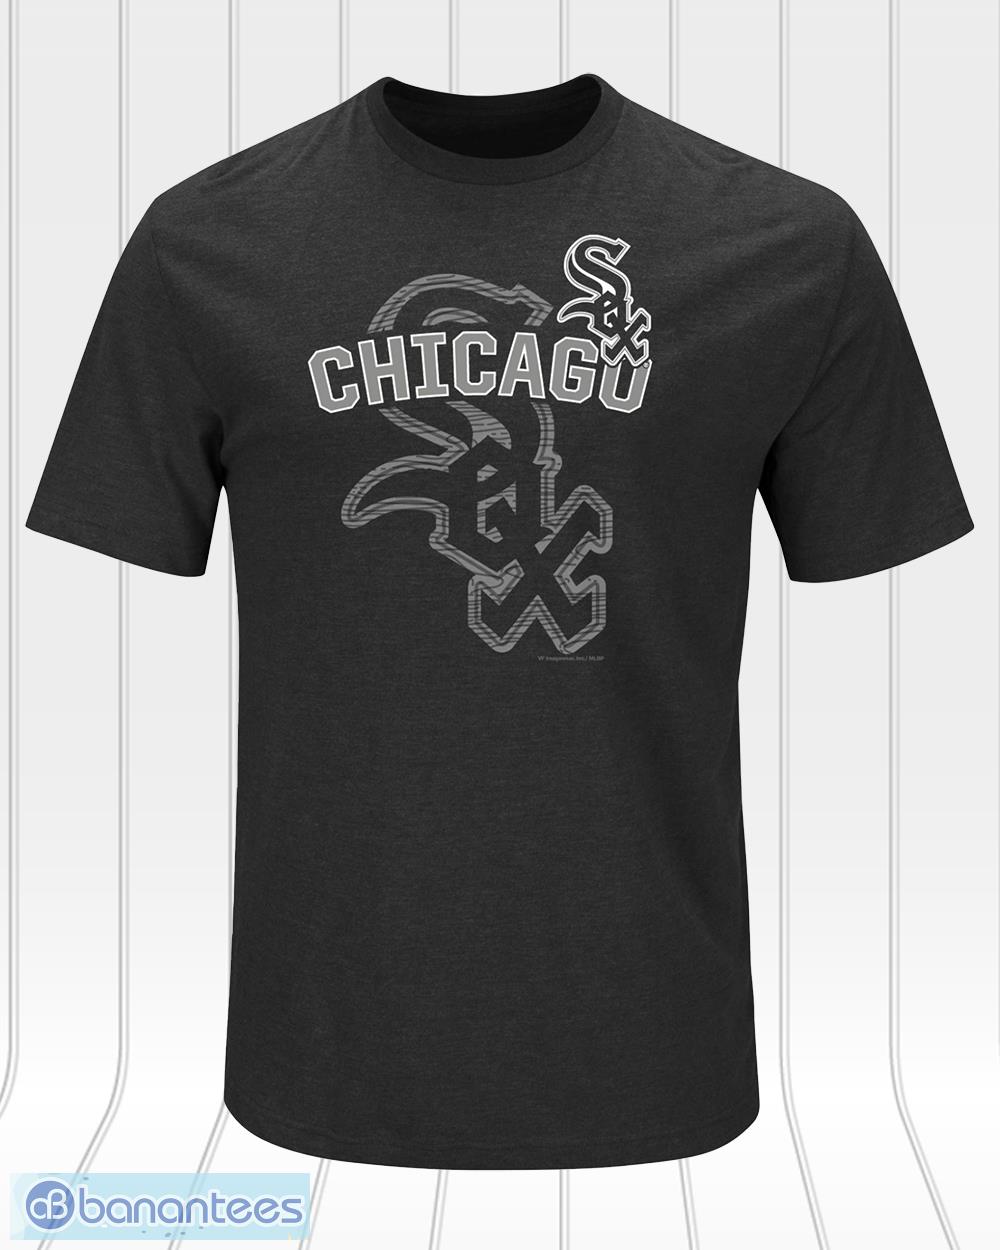 Chicago white sox print new T shirts - Banantees